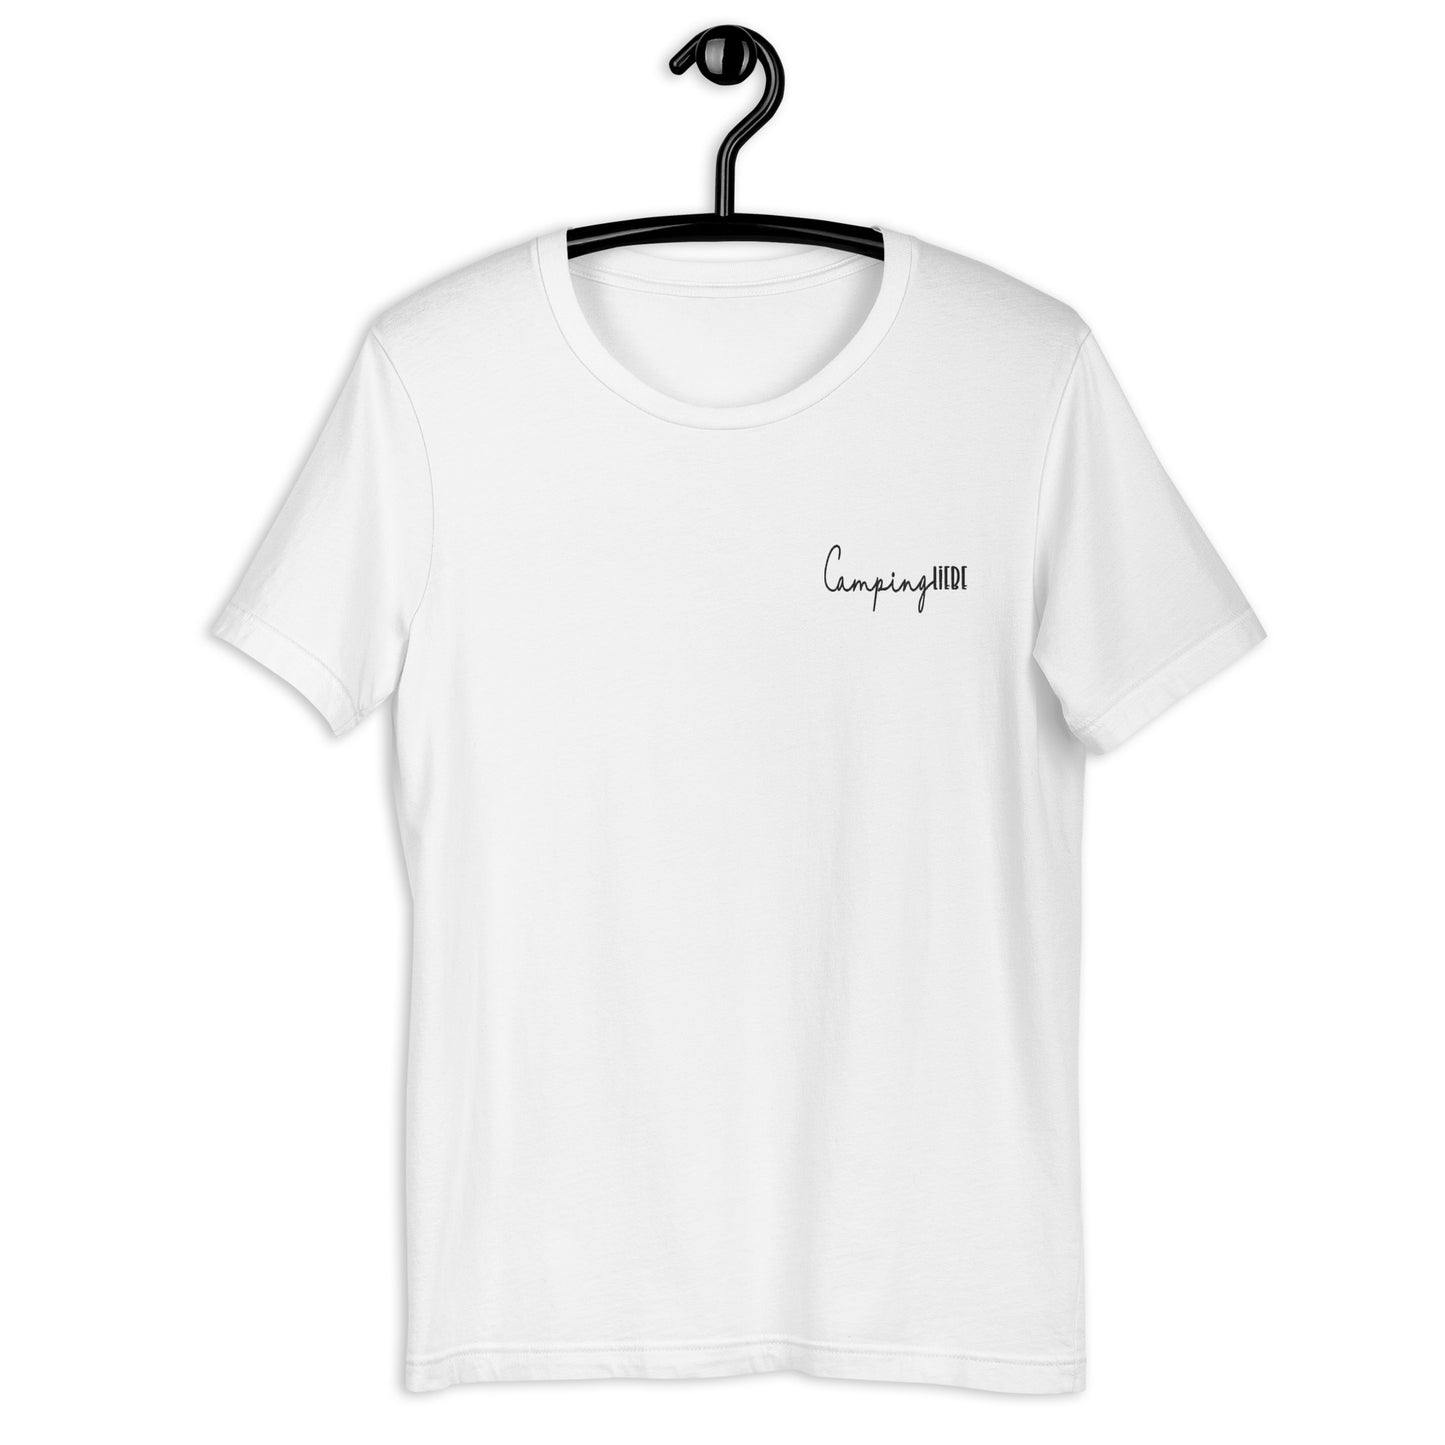 Unisex-T-Shirt, T-Shirt, Camper-Shirt, T-Shirt für Camper, Camping, Camping